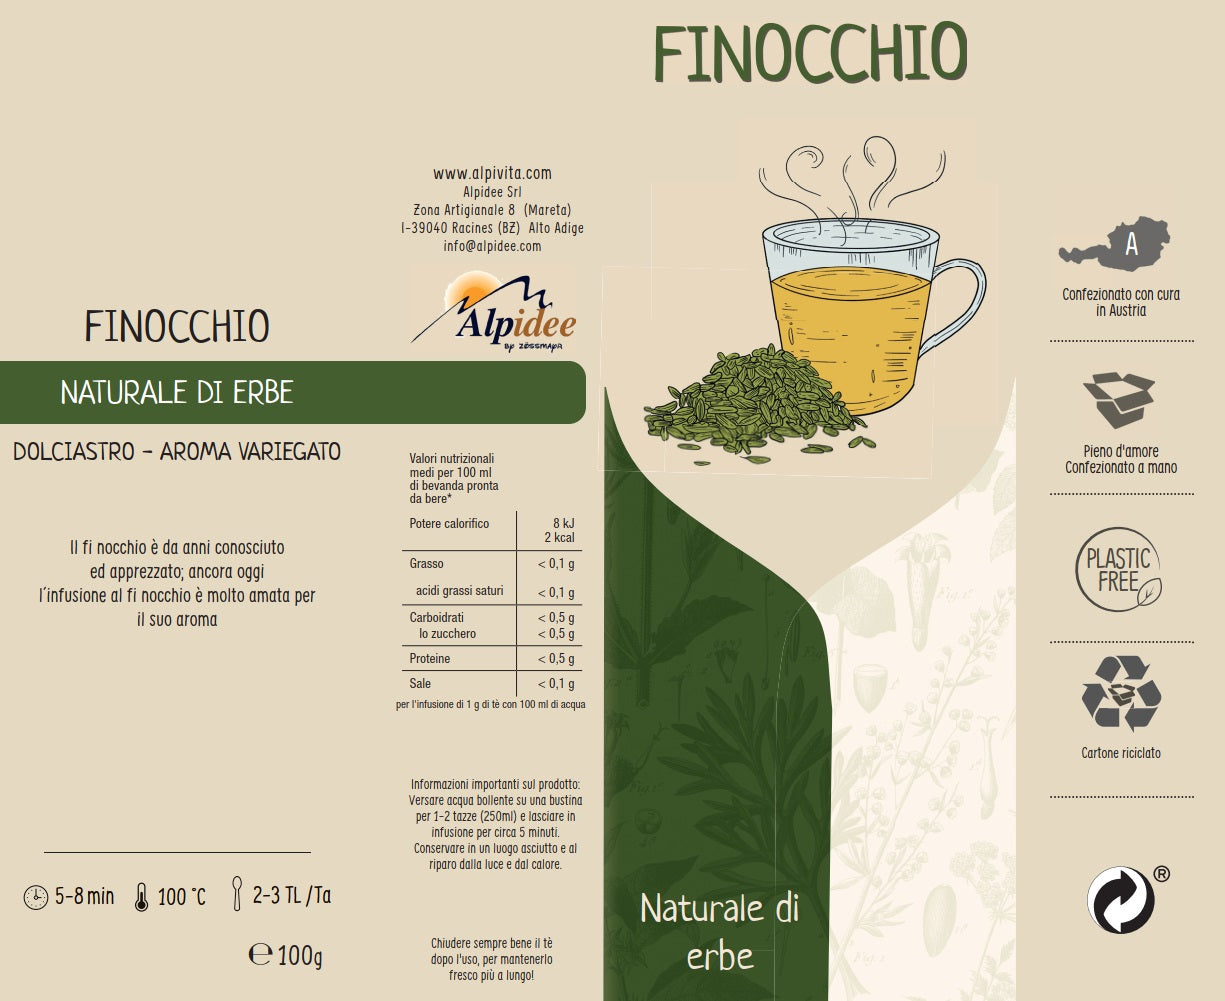 Tè naturale FINOCCHIO, dolciastro, aroma variegato, 100g